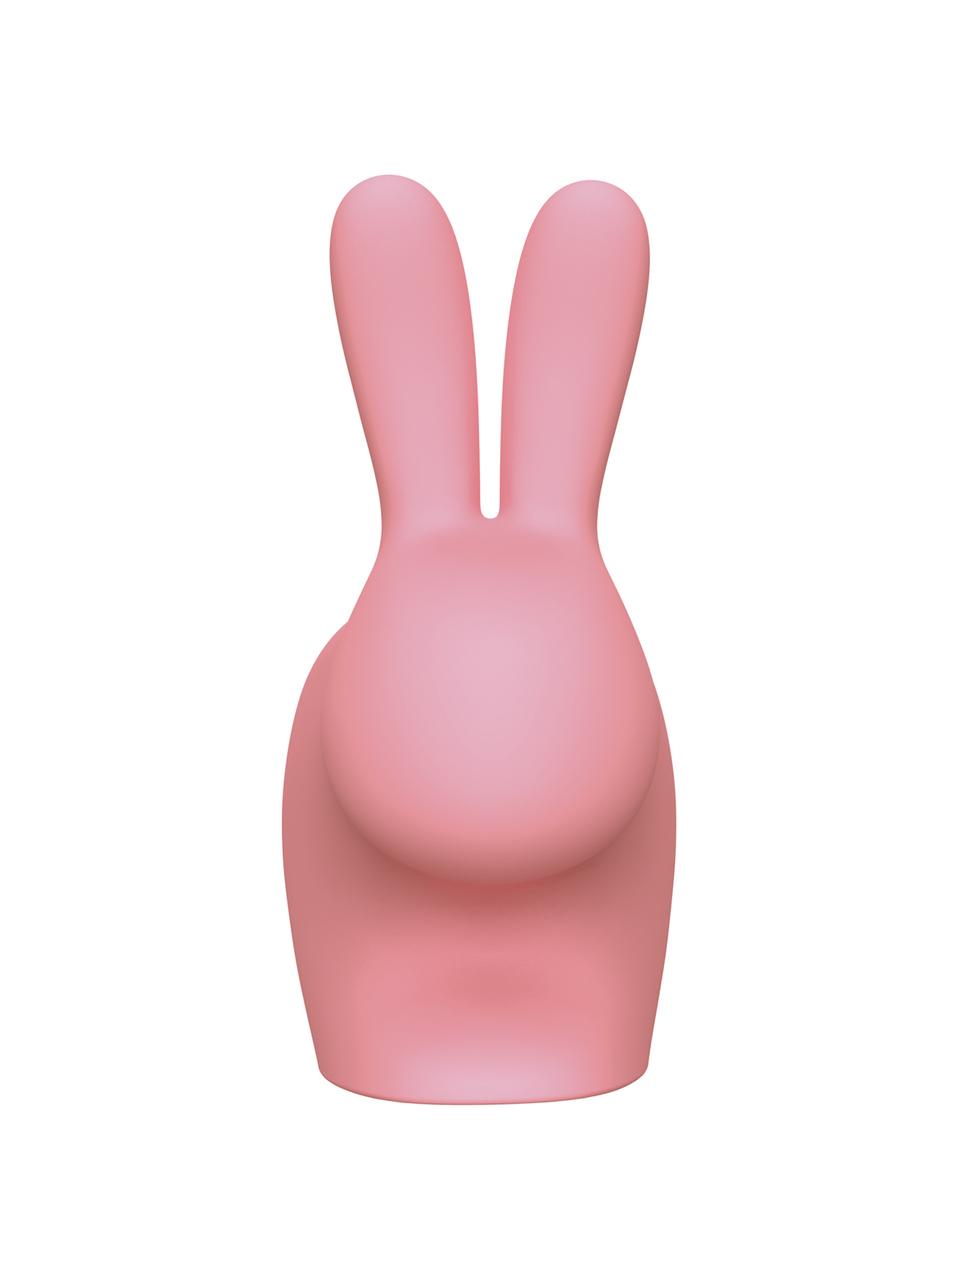 Cargador portátil Rabbit, Vinilo, Rosa, An 10 x Al 11 cm